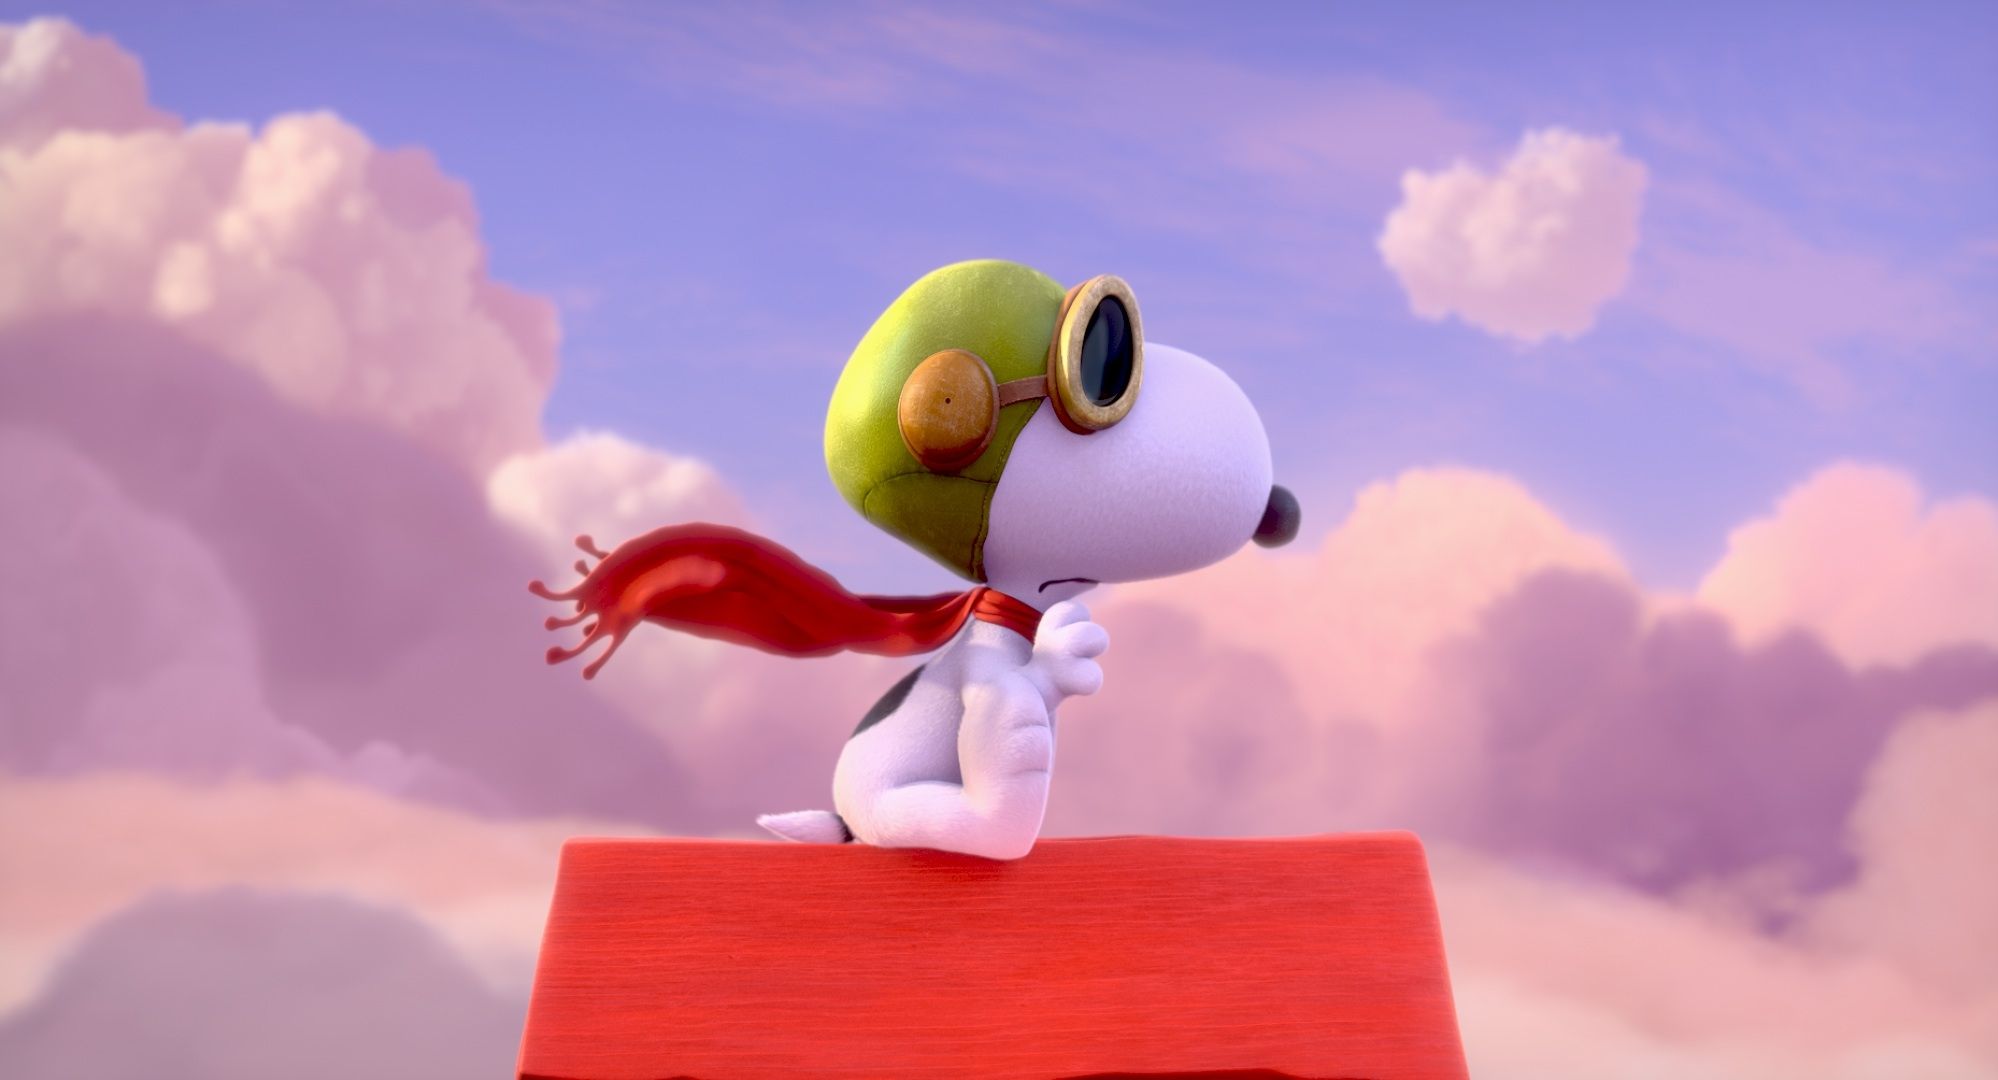 Snoopy & Friends arriva in home video con un sacco di contenuti!